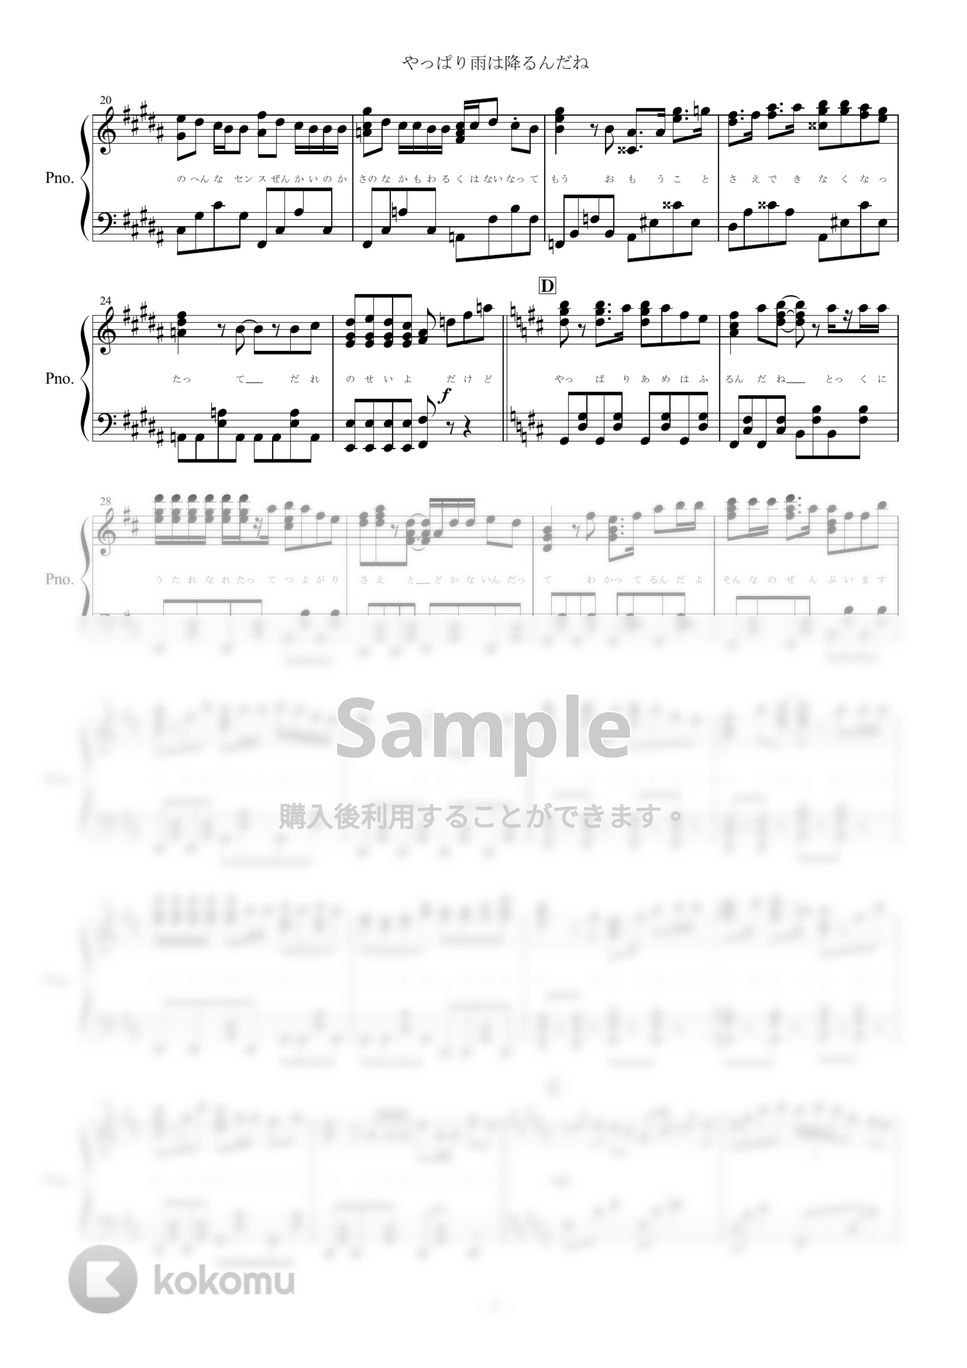 ツユ - やっぱり雨は降るんだね (ピアノ楽譜/全６ページ) by yoshi